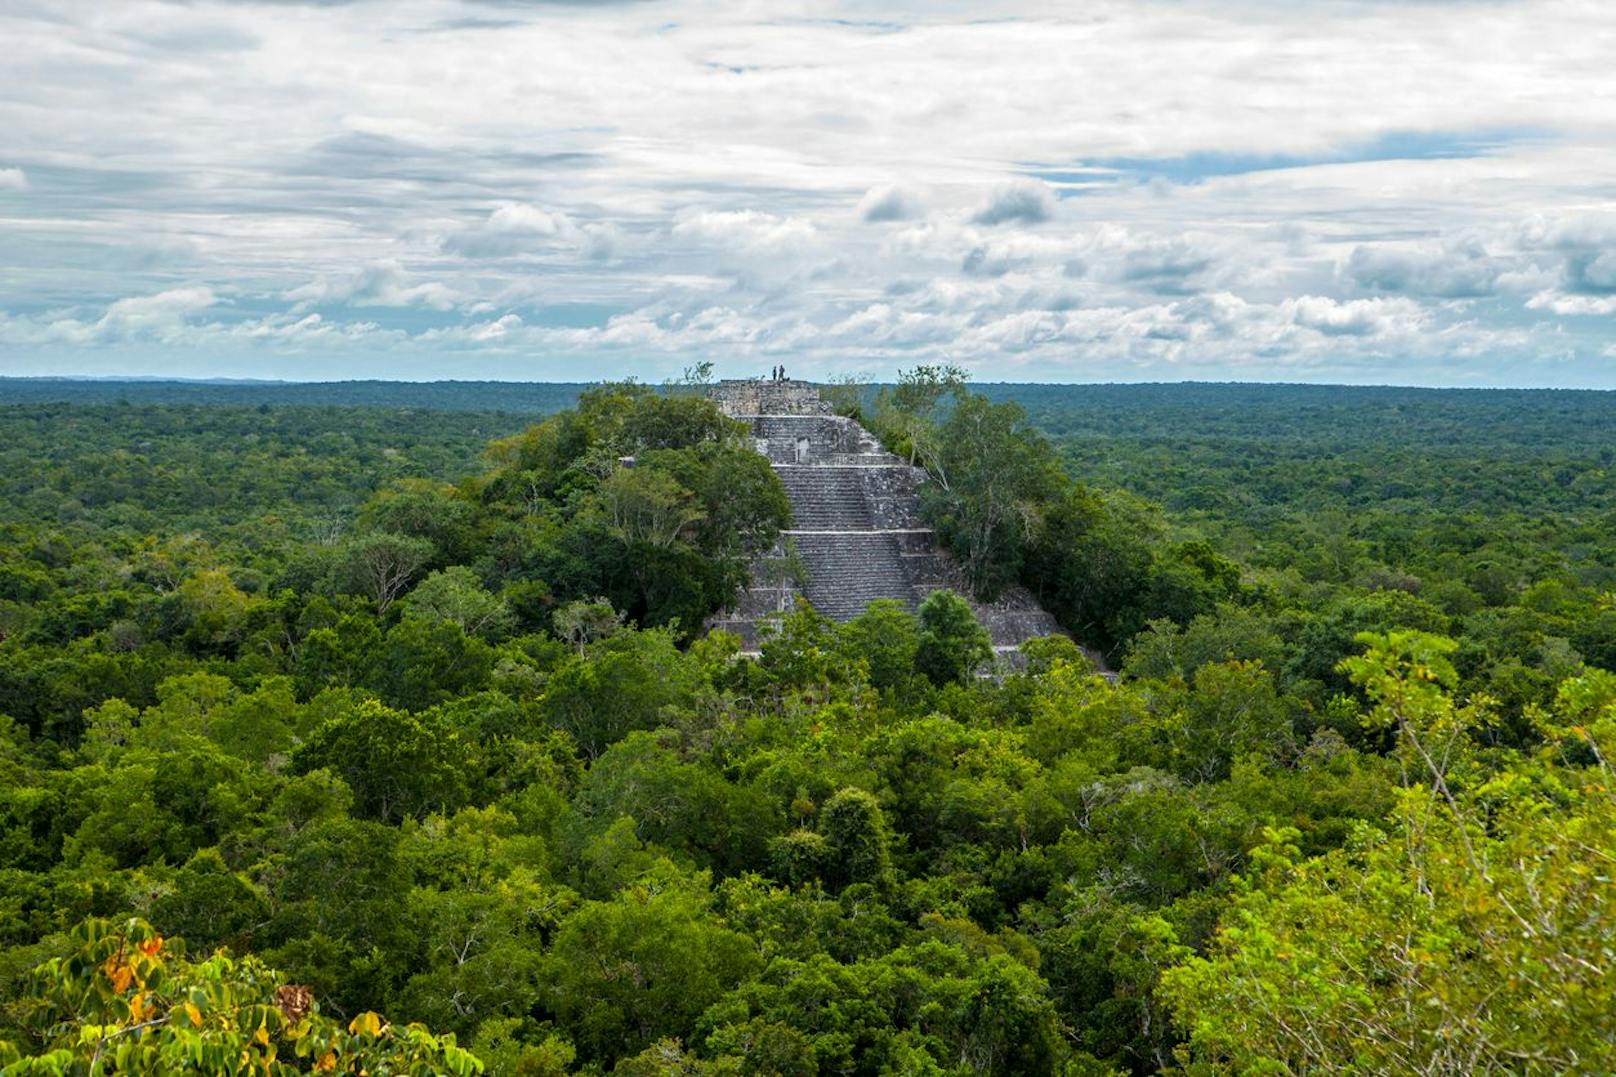 Der lange verborgene Ort befindet sich im Ökoreservat von Balamkú im Bundesstaat Campeche. In der Nähe befindet sich auch die große Maya-Stätde Calakmul (Bild).